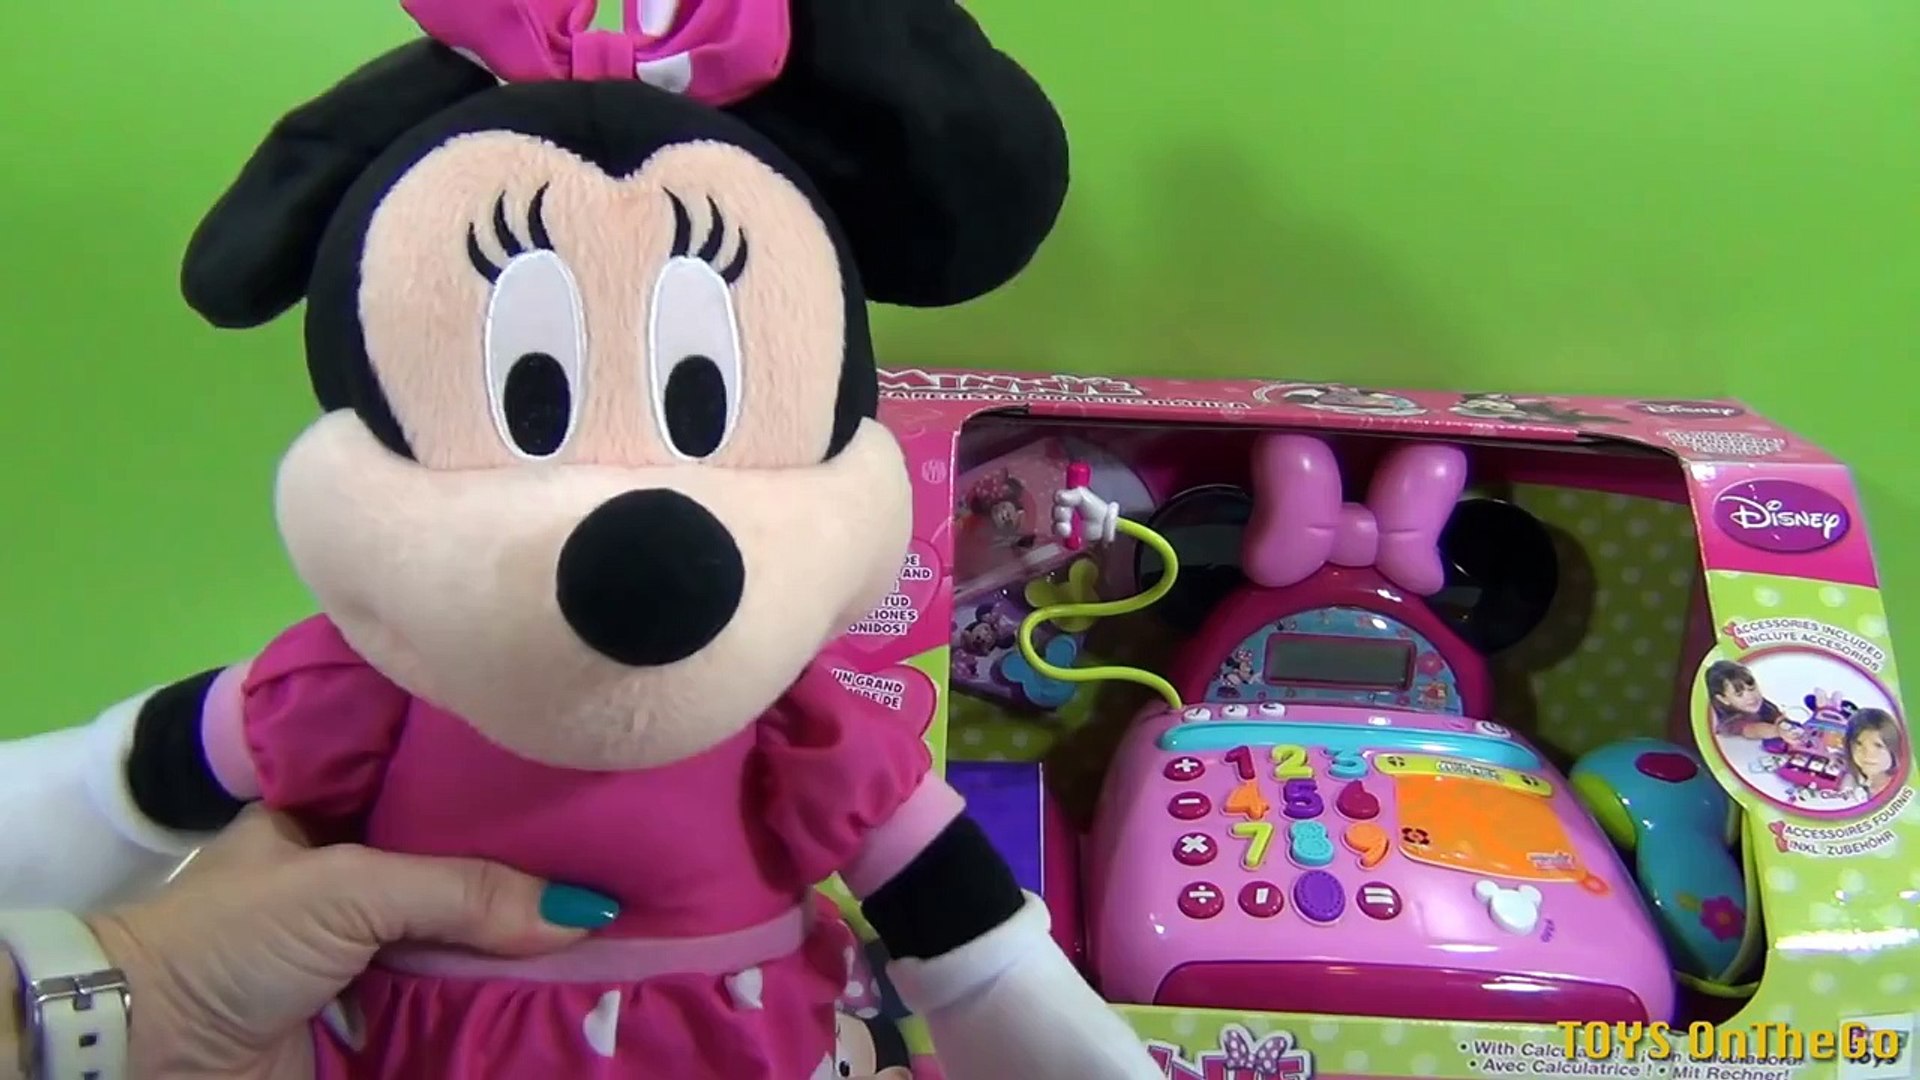 Caja Registradora Minnie Mouse